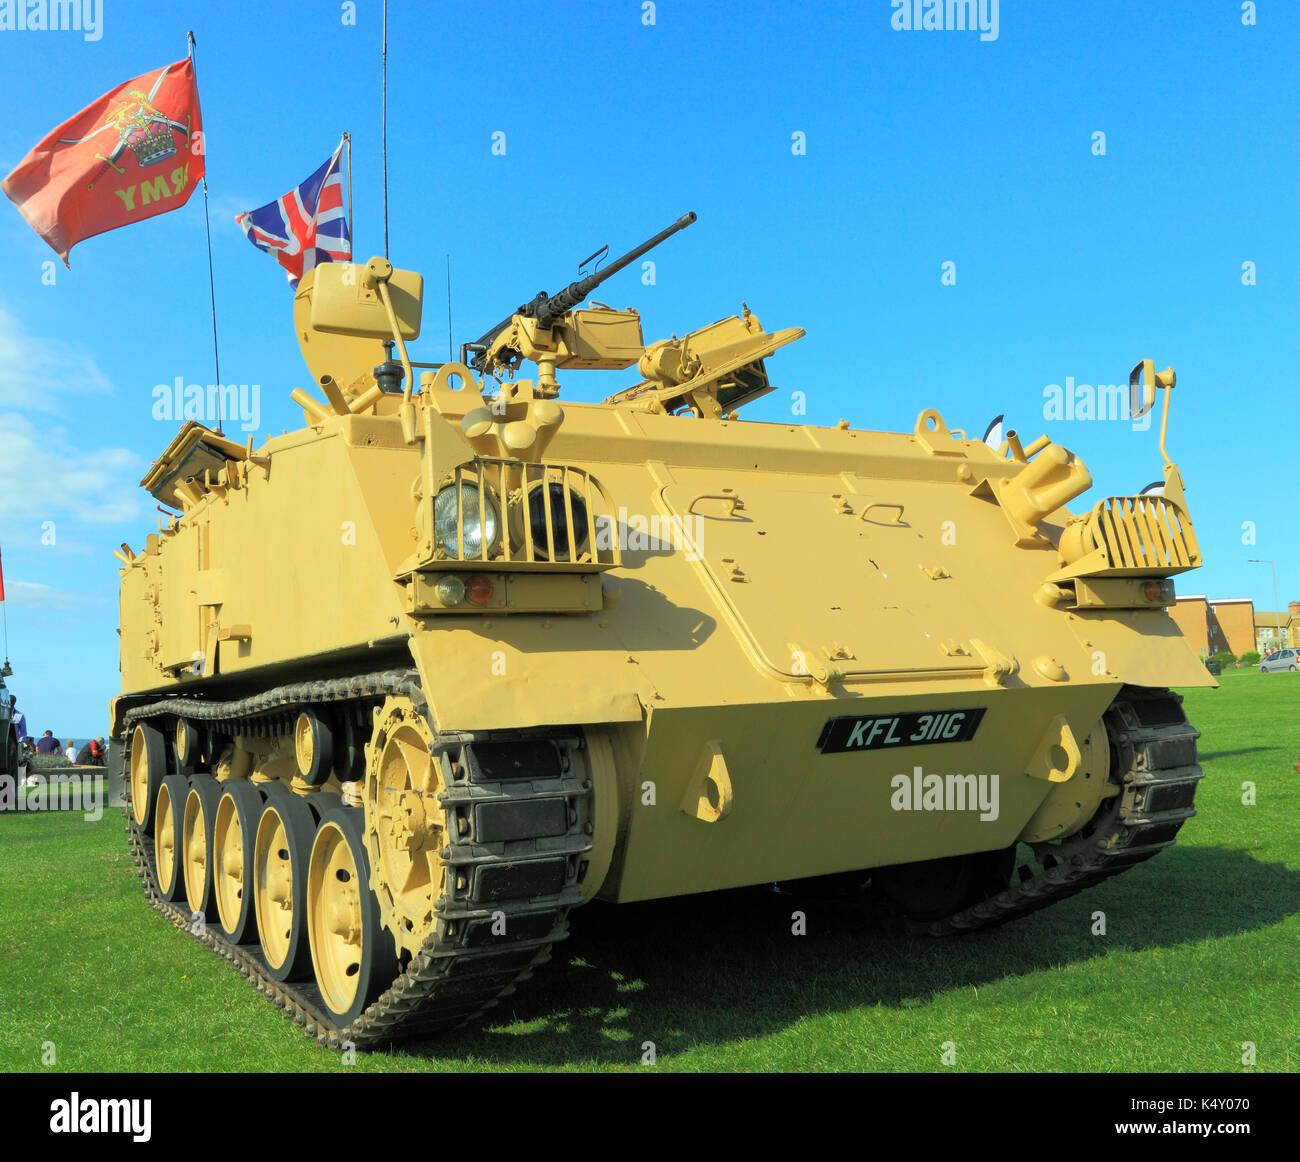 Britische Armee 432 Tank, der in der ersten Irak Krieg eingesetzt, Militär, Fahrzeug, Fahrzeuge, Kriege, Army Flagge Union Jack Flagge, Fahnen, Waffen, Waffen, England, Großbritannien Stockfoto